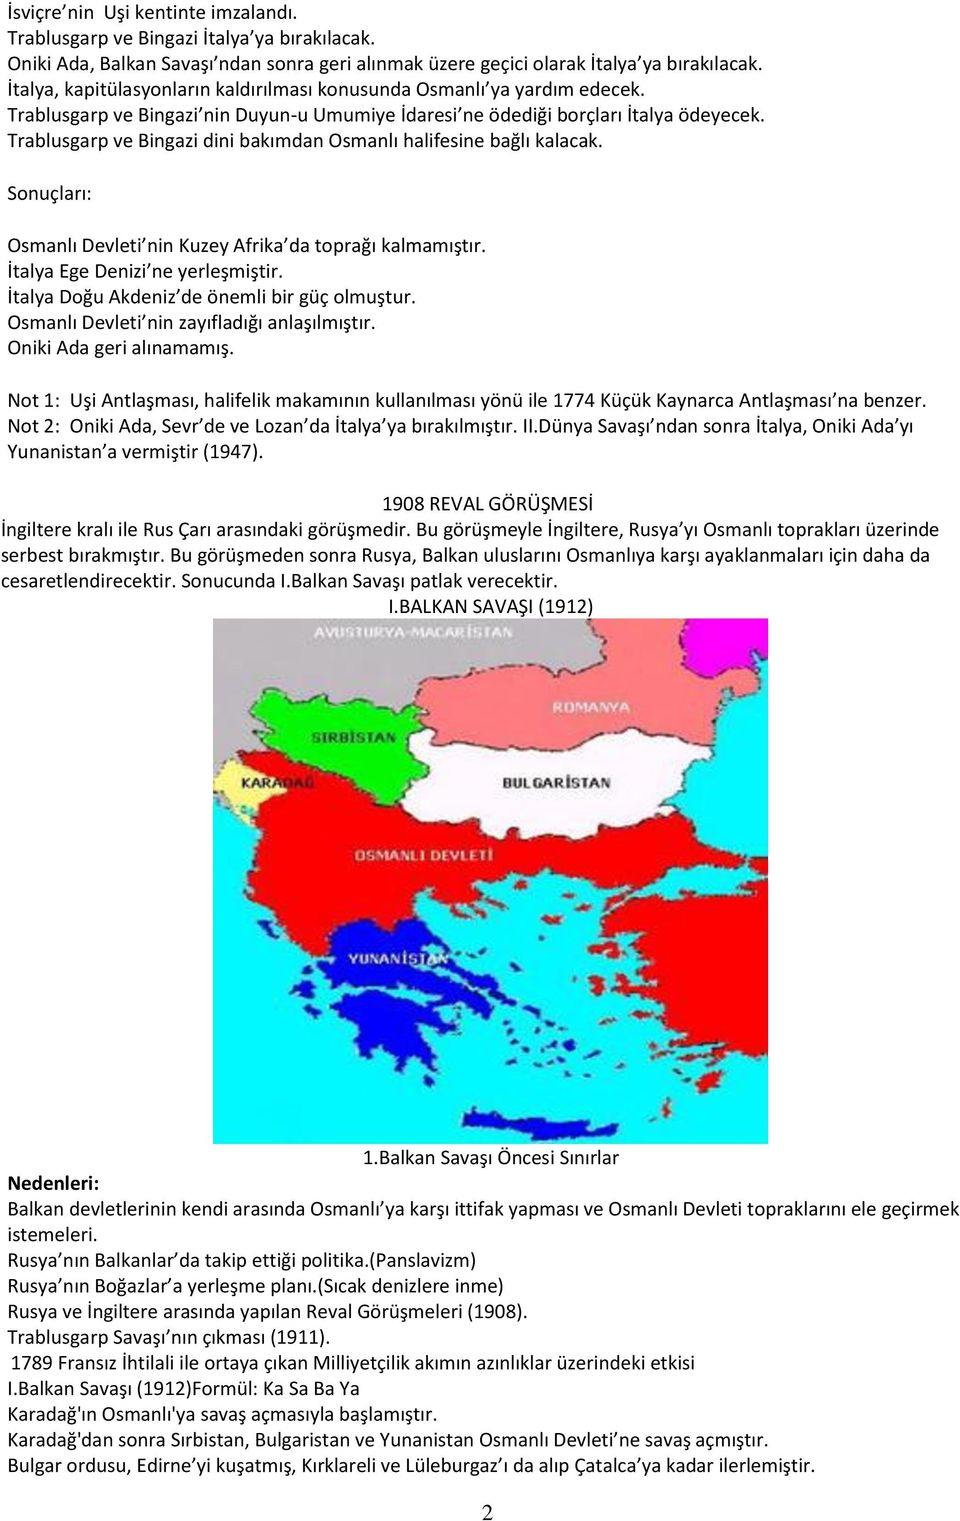 Trablusgarp ve Bingazi dini bakımdan Osmanlı halifesine bağlı kalacak. Sonuçları: Osmanlı Devleti nin Kuzey Afrika da toprağı kalmamıştır. İtalya Ege Denizi ne yerleşmiştir.